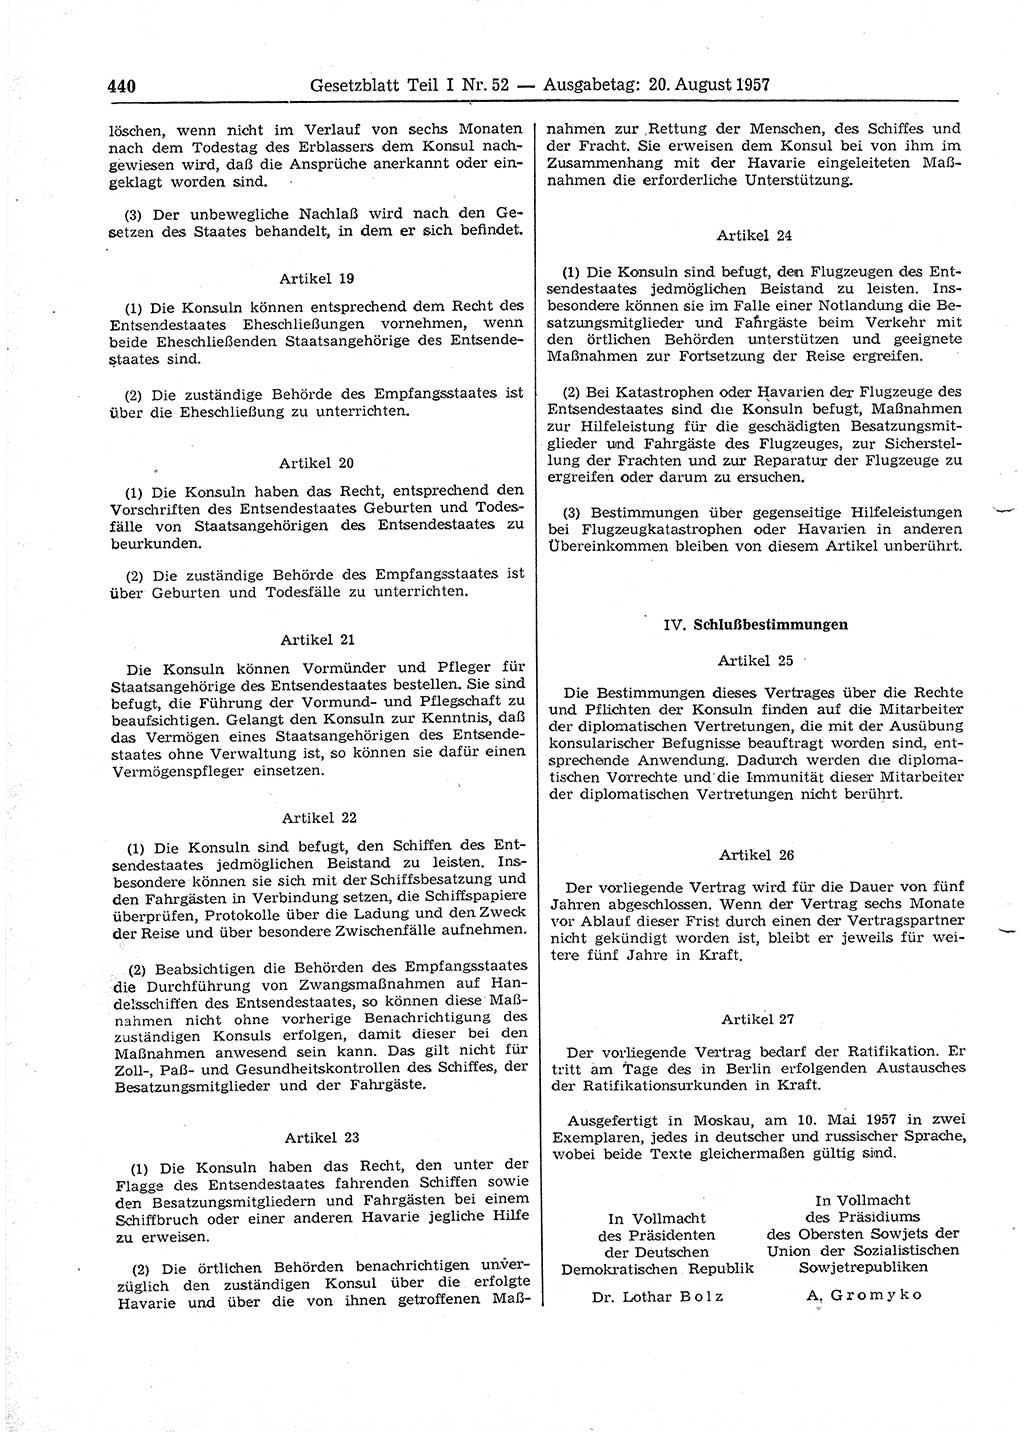 Gesetzblatt (GBl.) der Deutschen Demokratischen Republik (DDR) Teil Ⅰ 1957, Seite 440 (GBl. DDR Ⅰ 1957, S. 440)